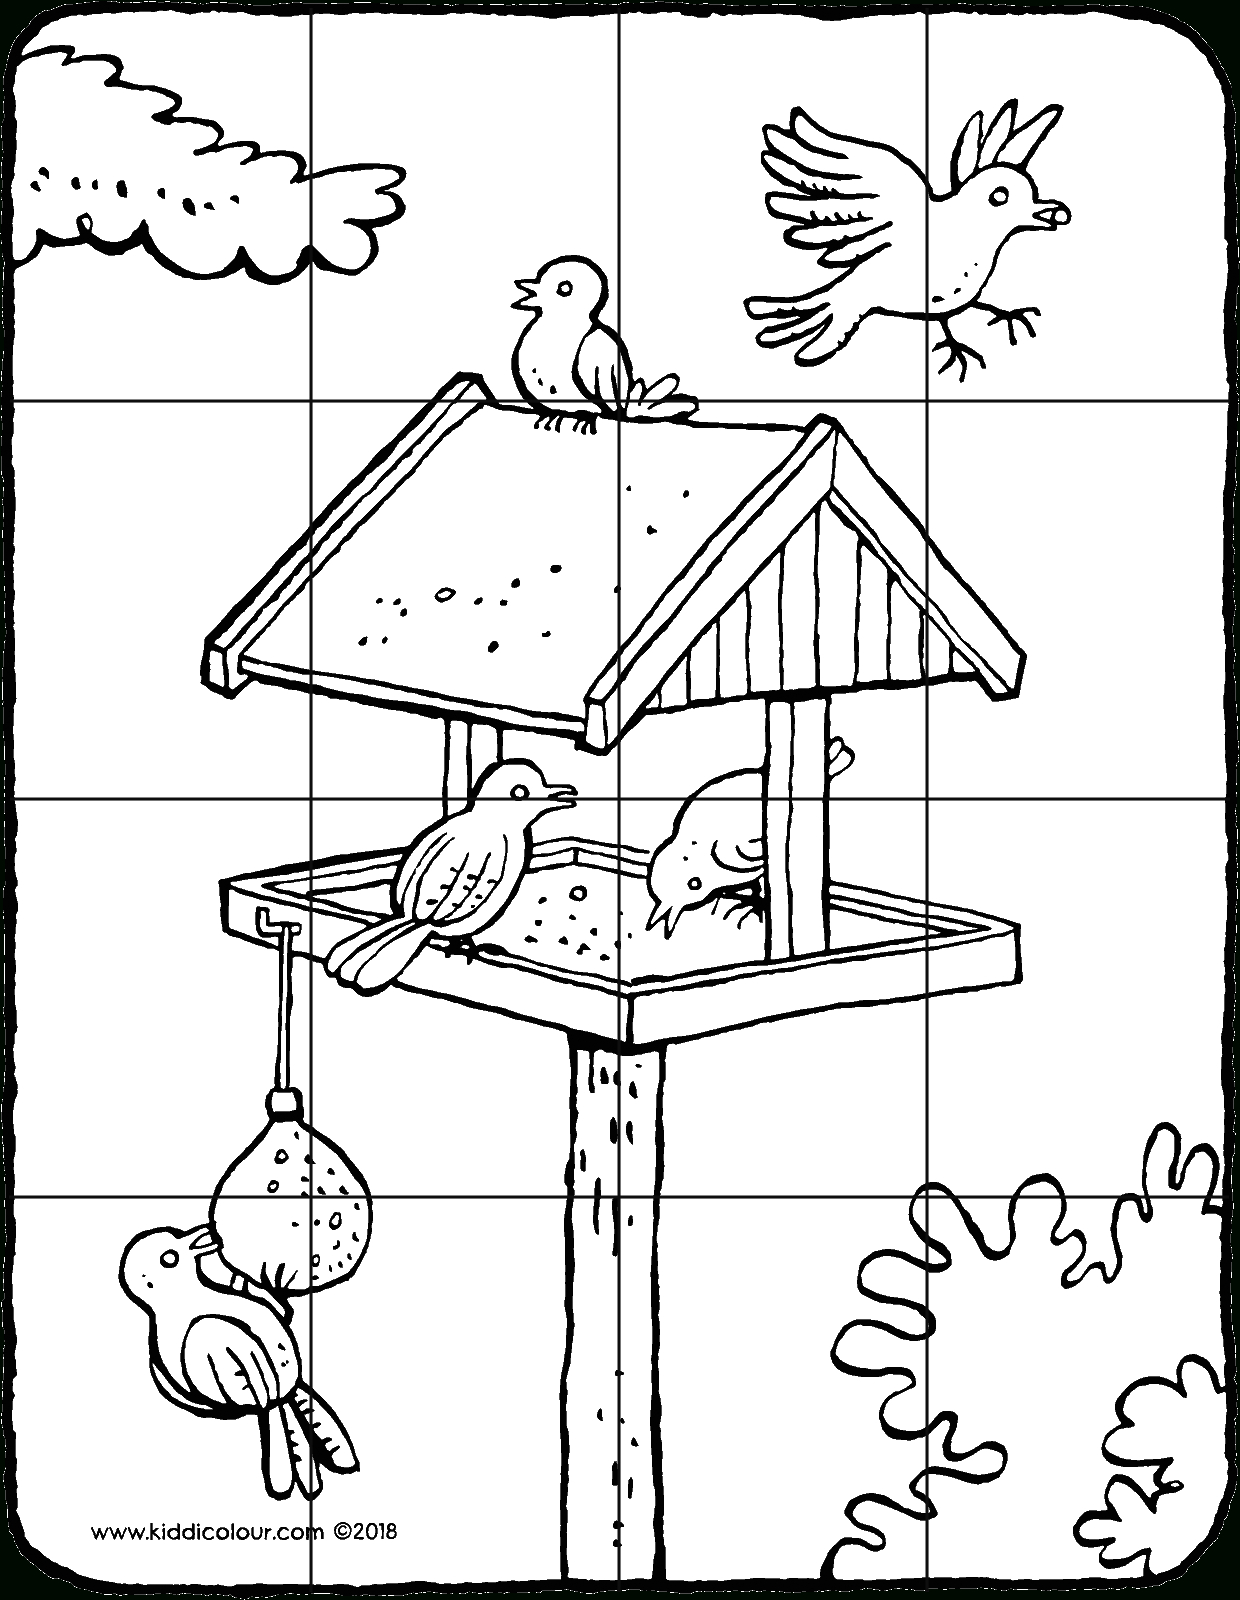 Puzzle 16 Teile - Ein Vogelhaus Mit Vögeln - Kiddimalseite innen Puzzle Zum Ausdrucken